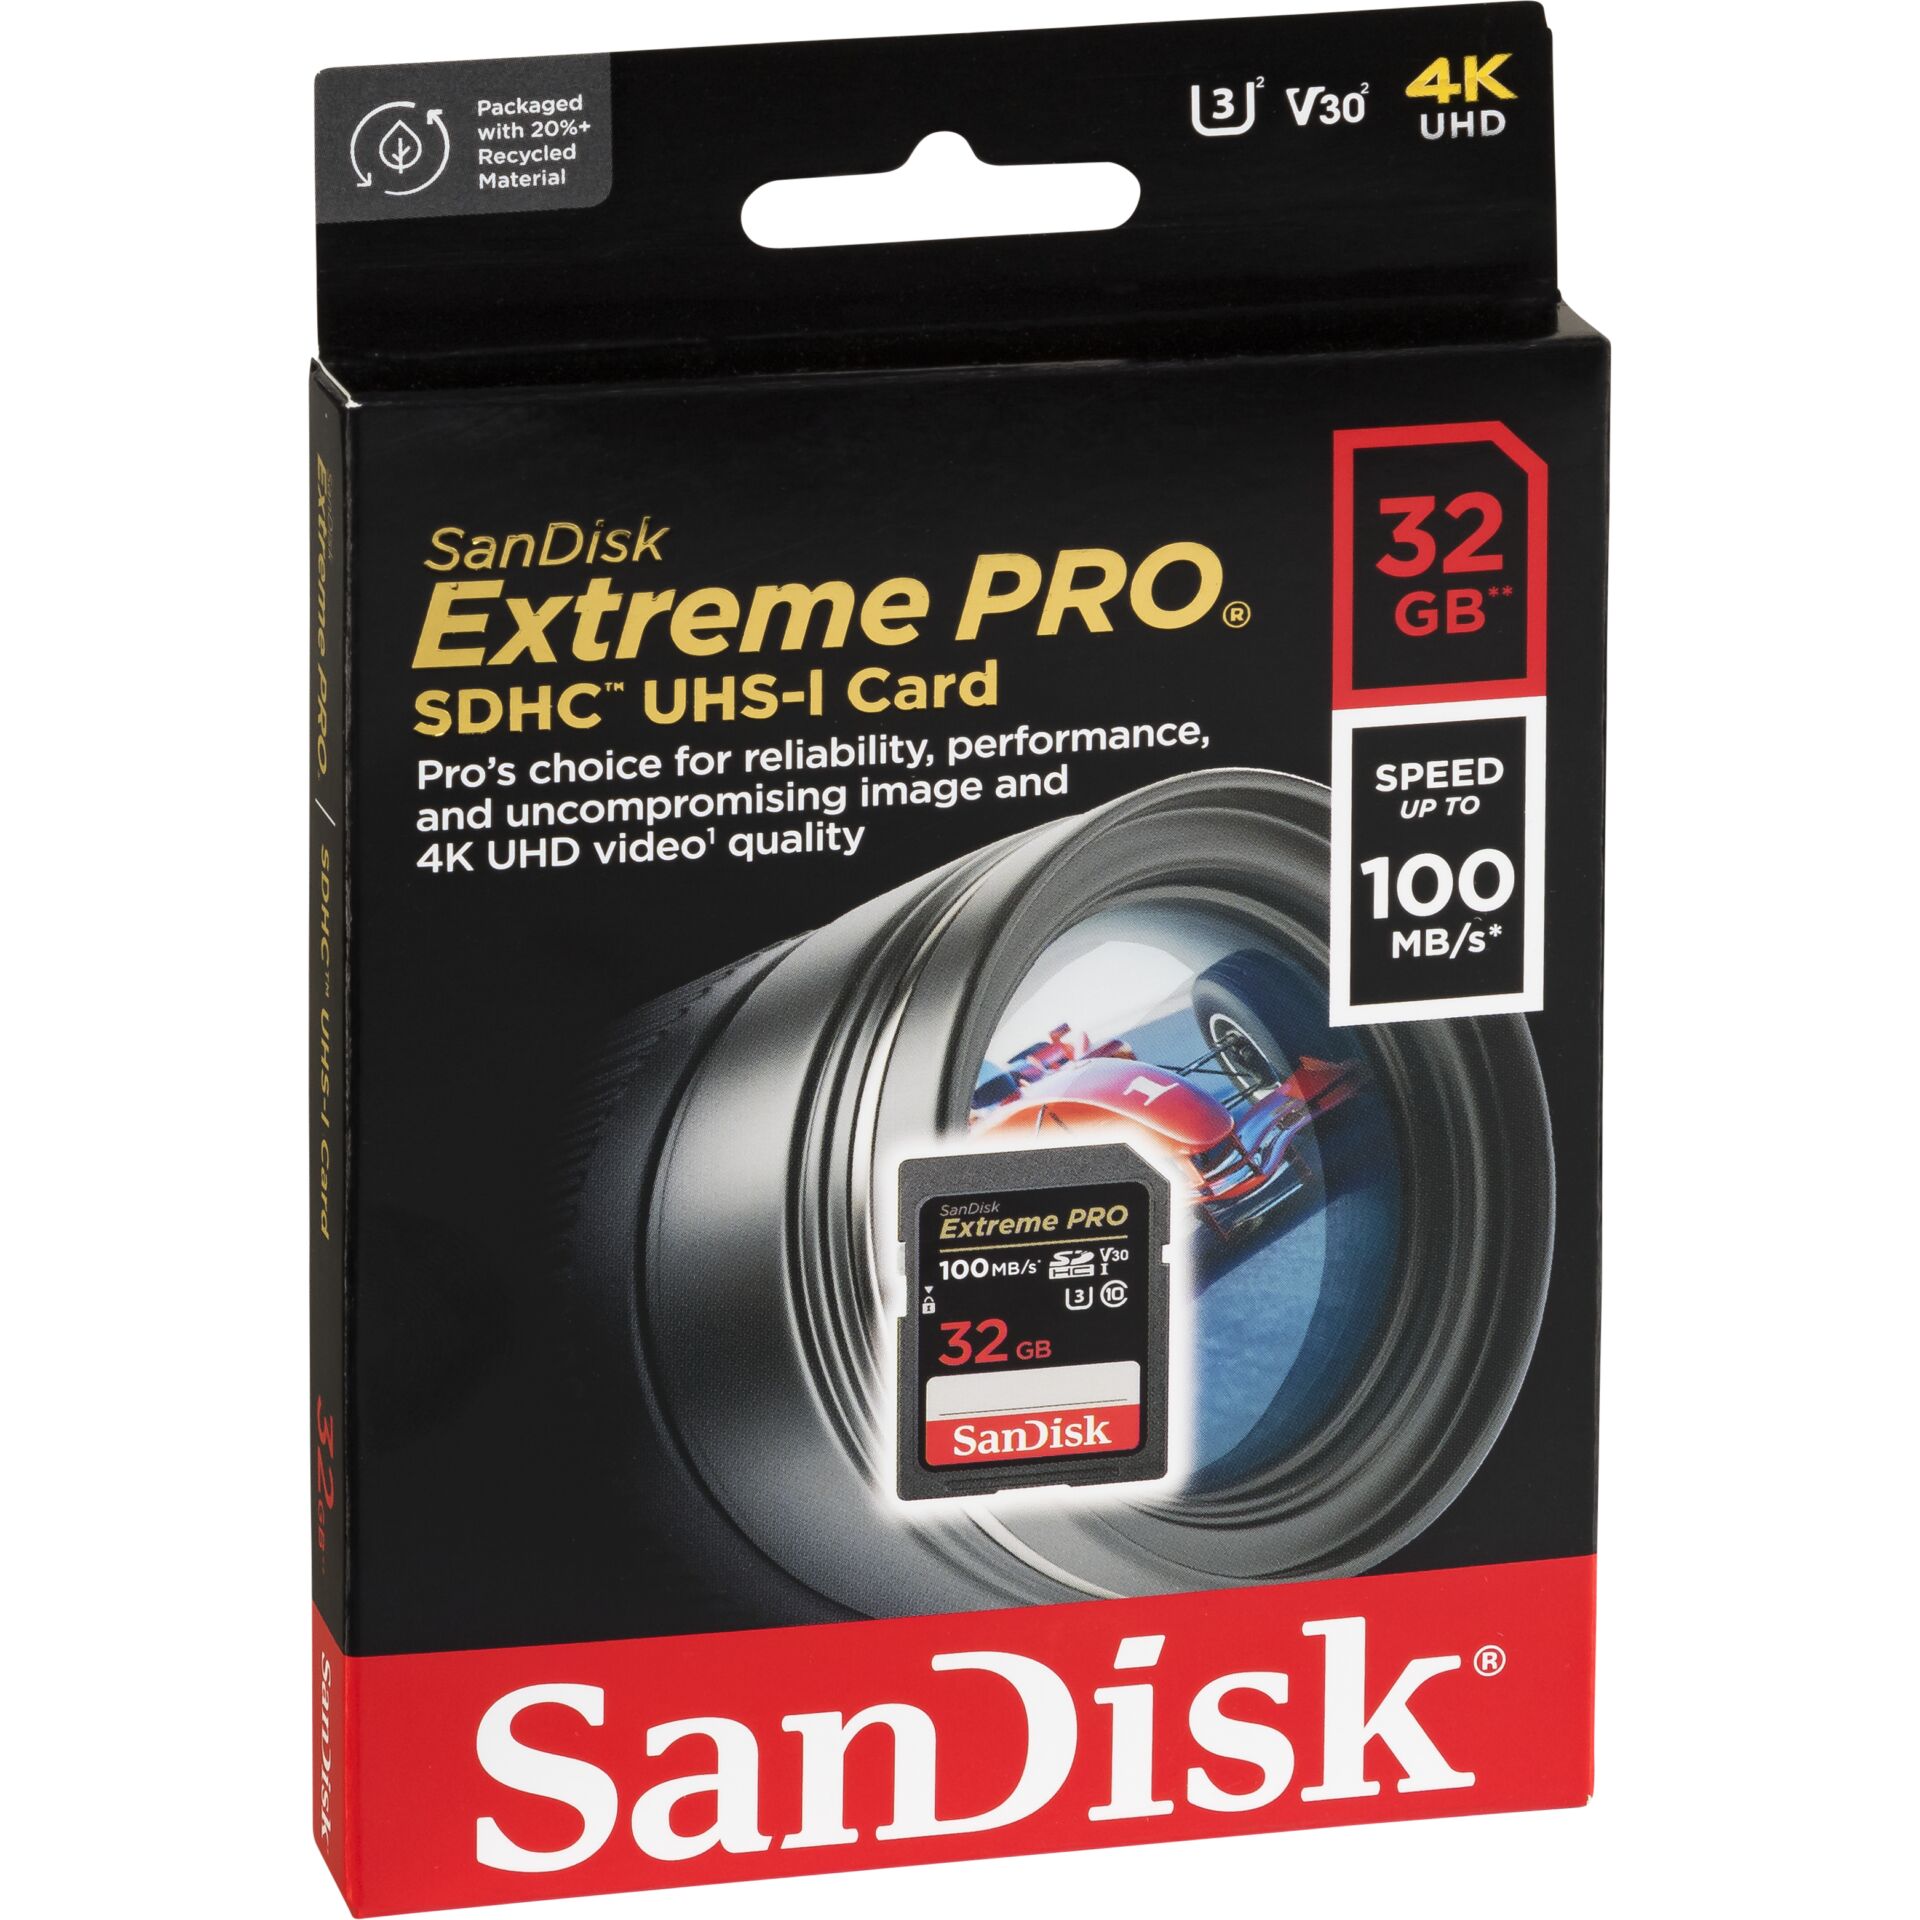 32 GB SanDisk Extreme PRO SDHC Speicherkarte, lesen: 100MB/s, schreiben: 90MB/s